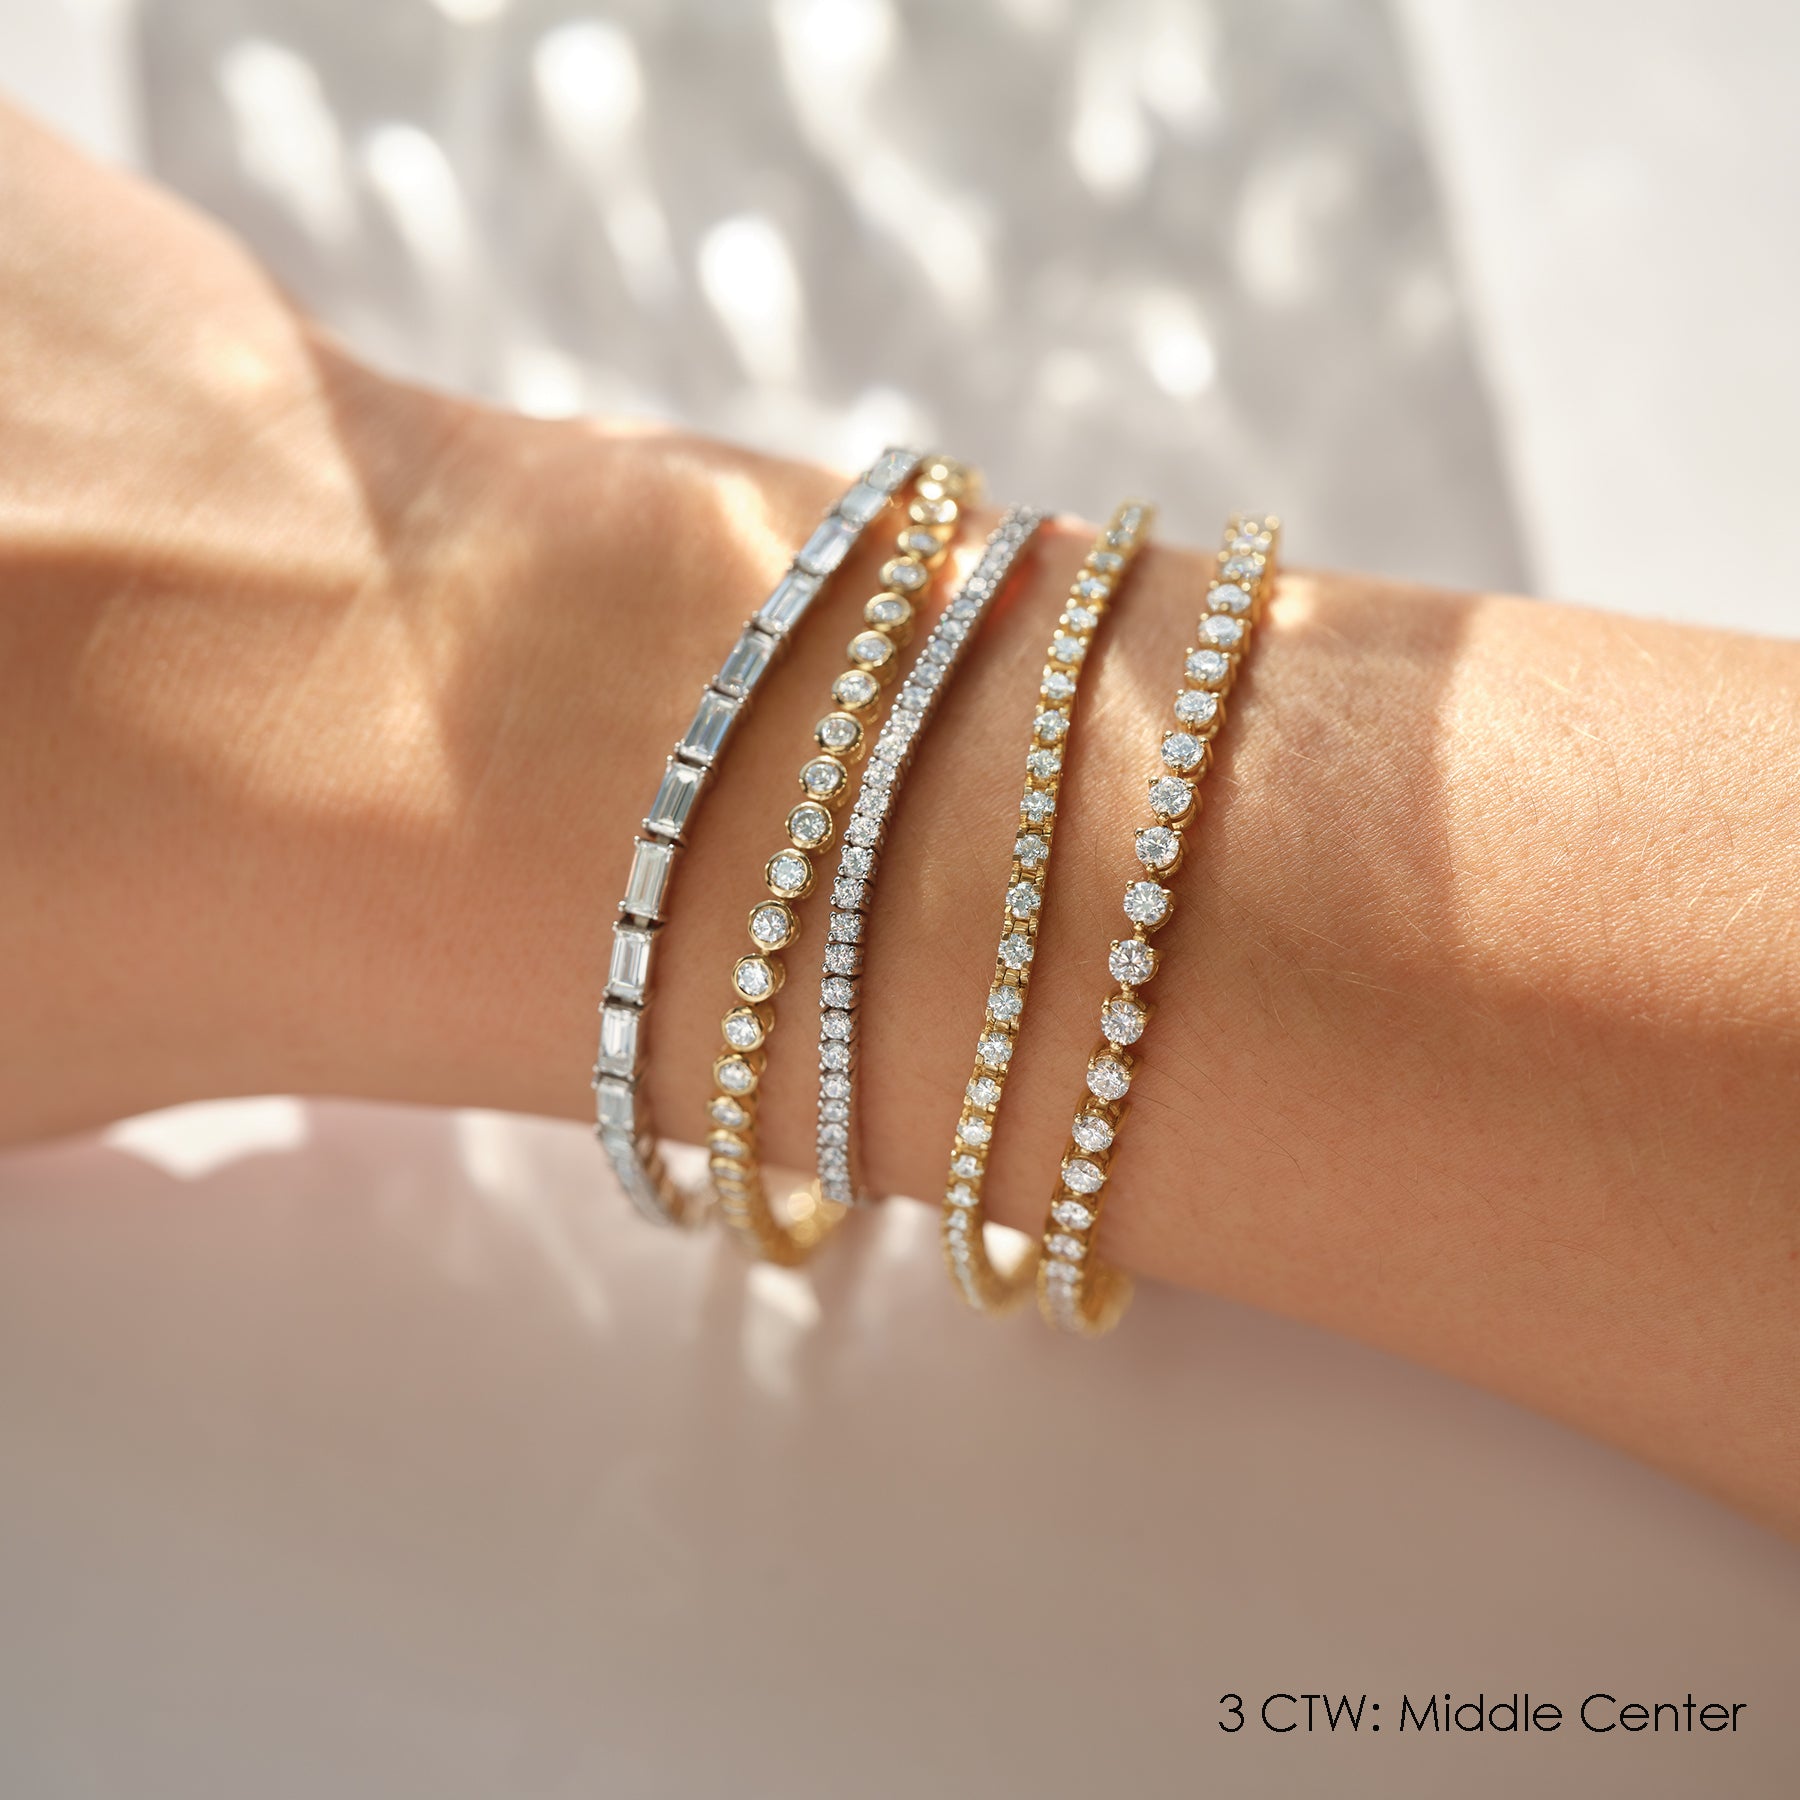 Share 152+ oval diamond bracelet